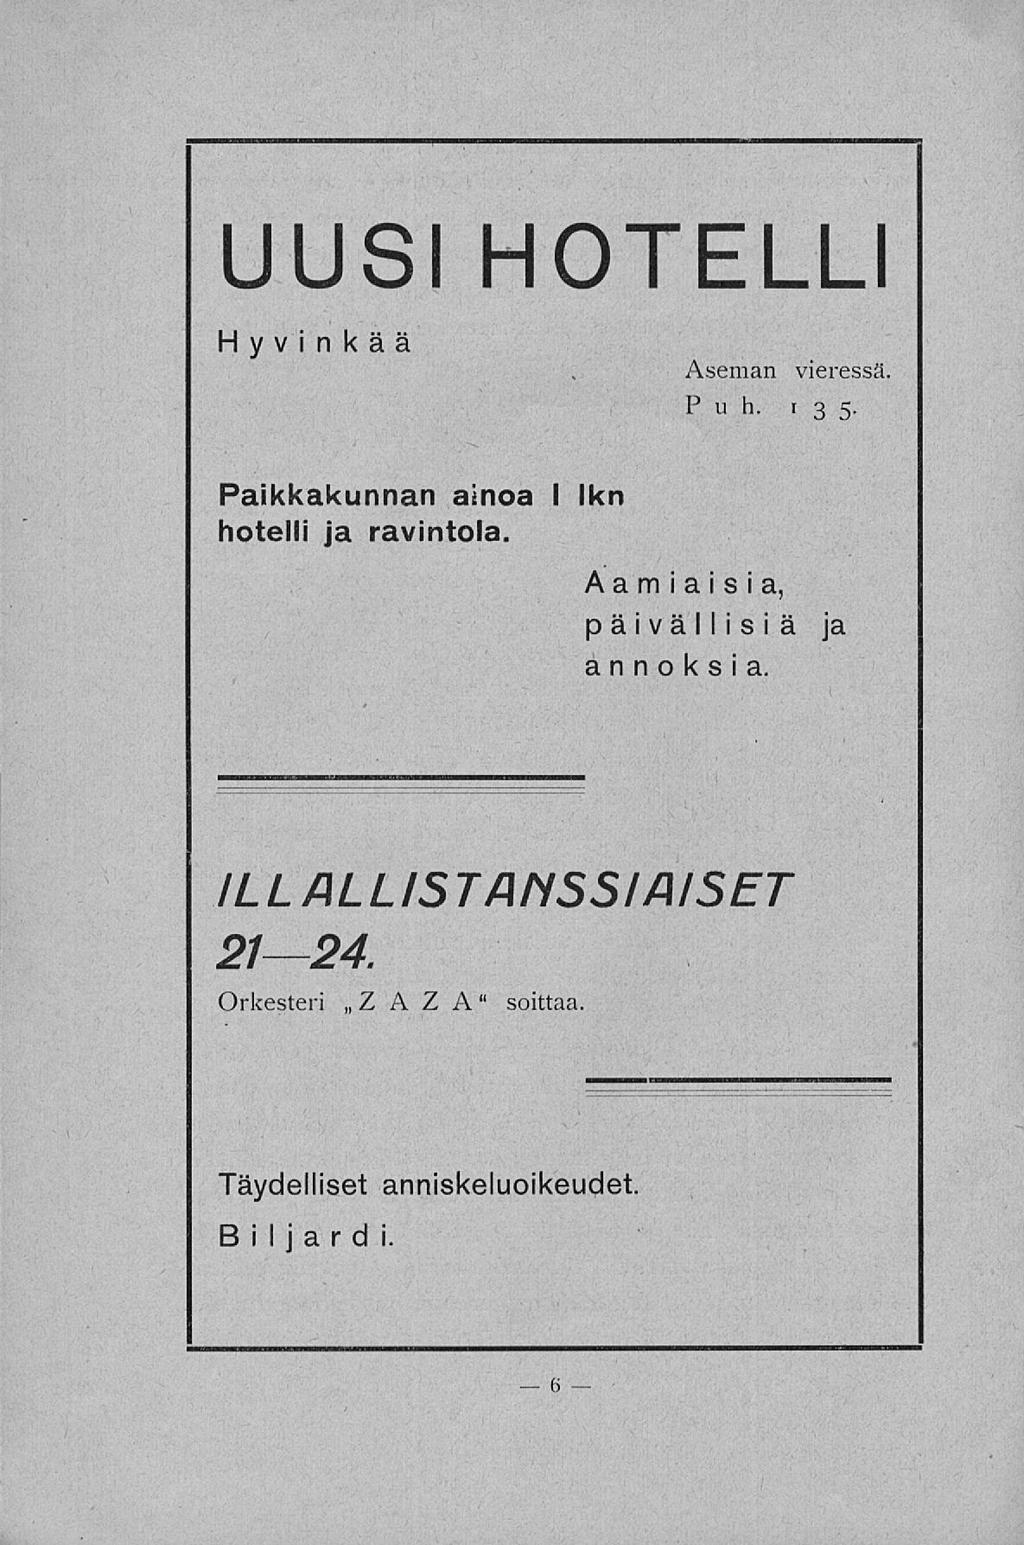 UUSI HOTELLI Hyvinkää Aseman vieressä Puh. t 3 5 Paikkakunnan ainoa I hotelli ja ravintola.